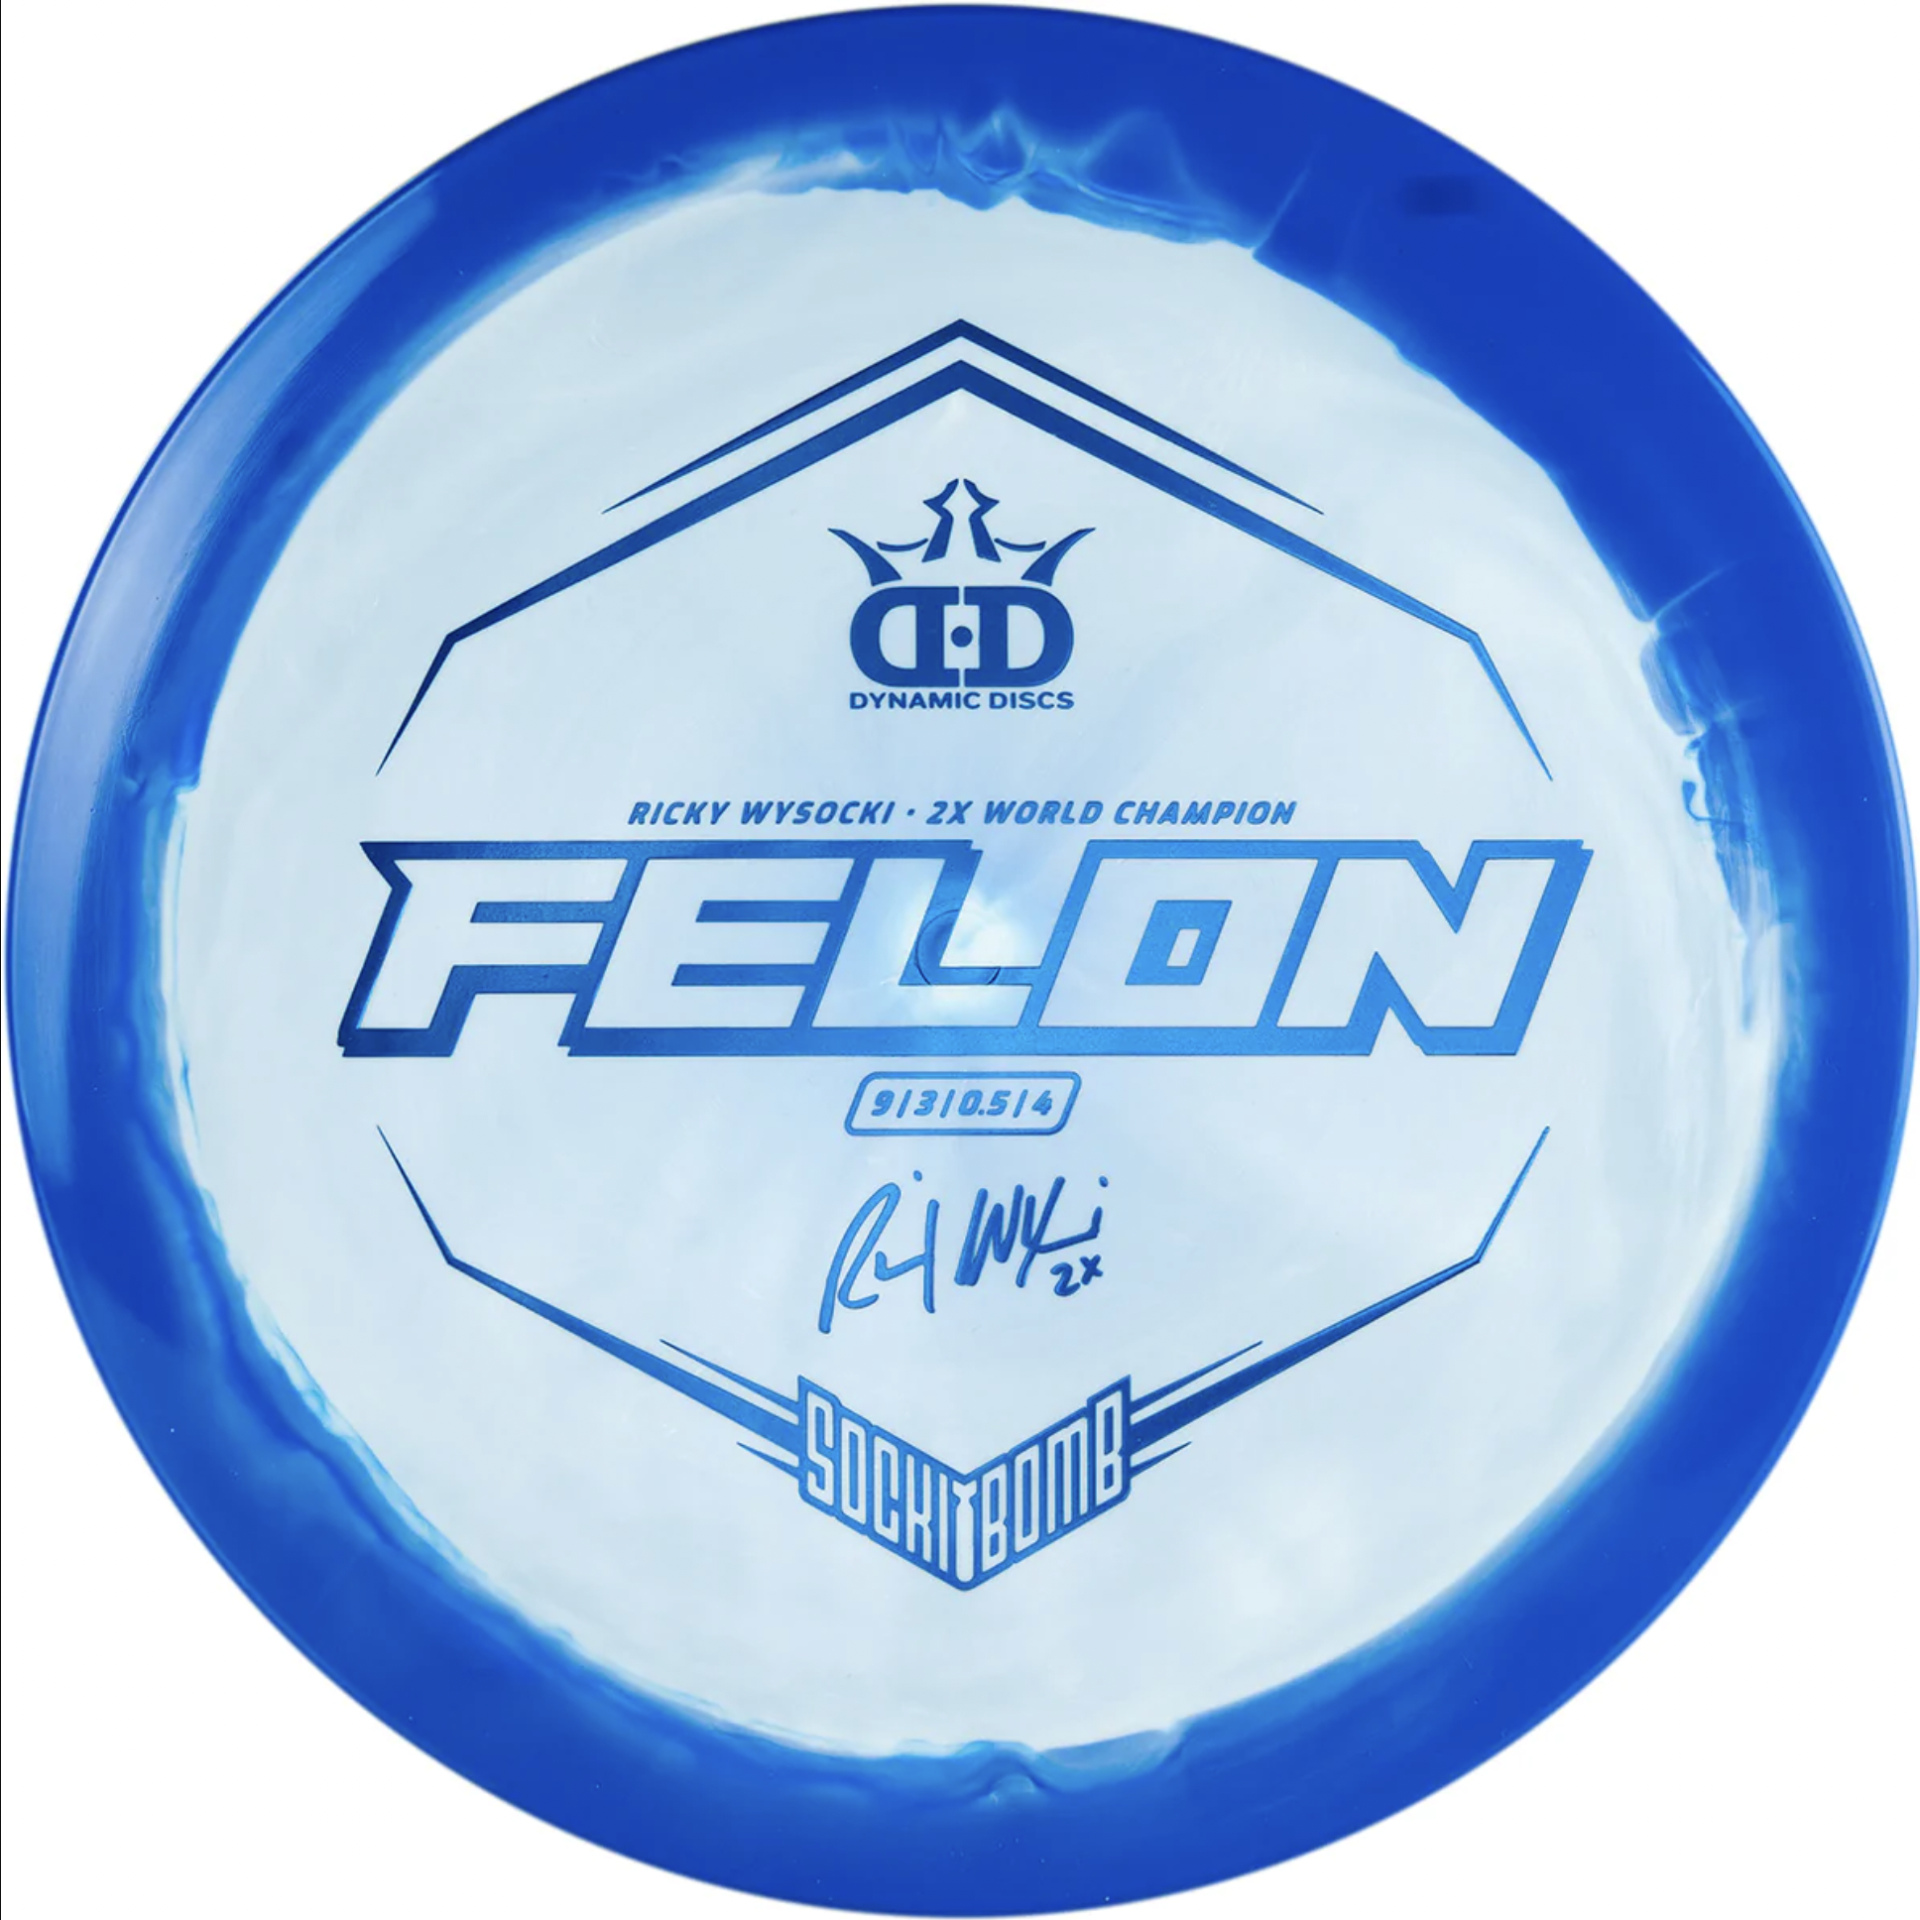 Dynamic Discs – Fuzion Orbit Felon – Ricky Wysocki